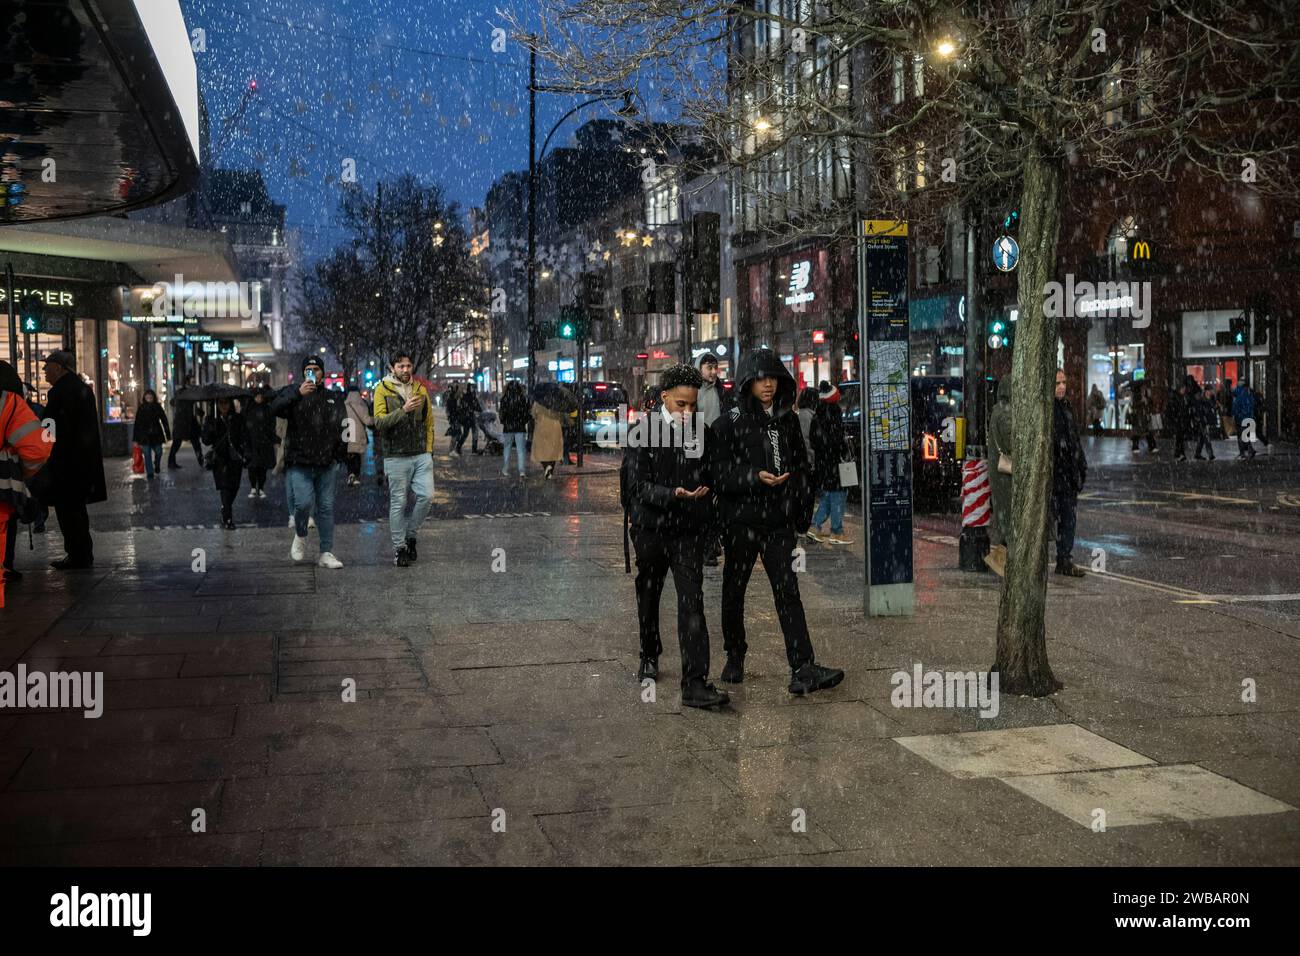 Käufer trotzen dem kalten Winter bei eisigen Schneeregen und Regenschauern auf der Oxford Street, Londons geschäftigster High Street, England, Großbritannien Stockfoto